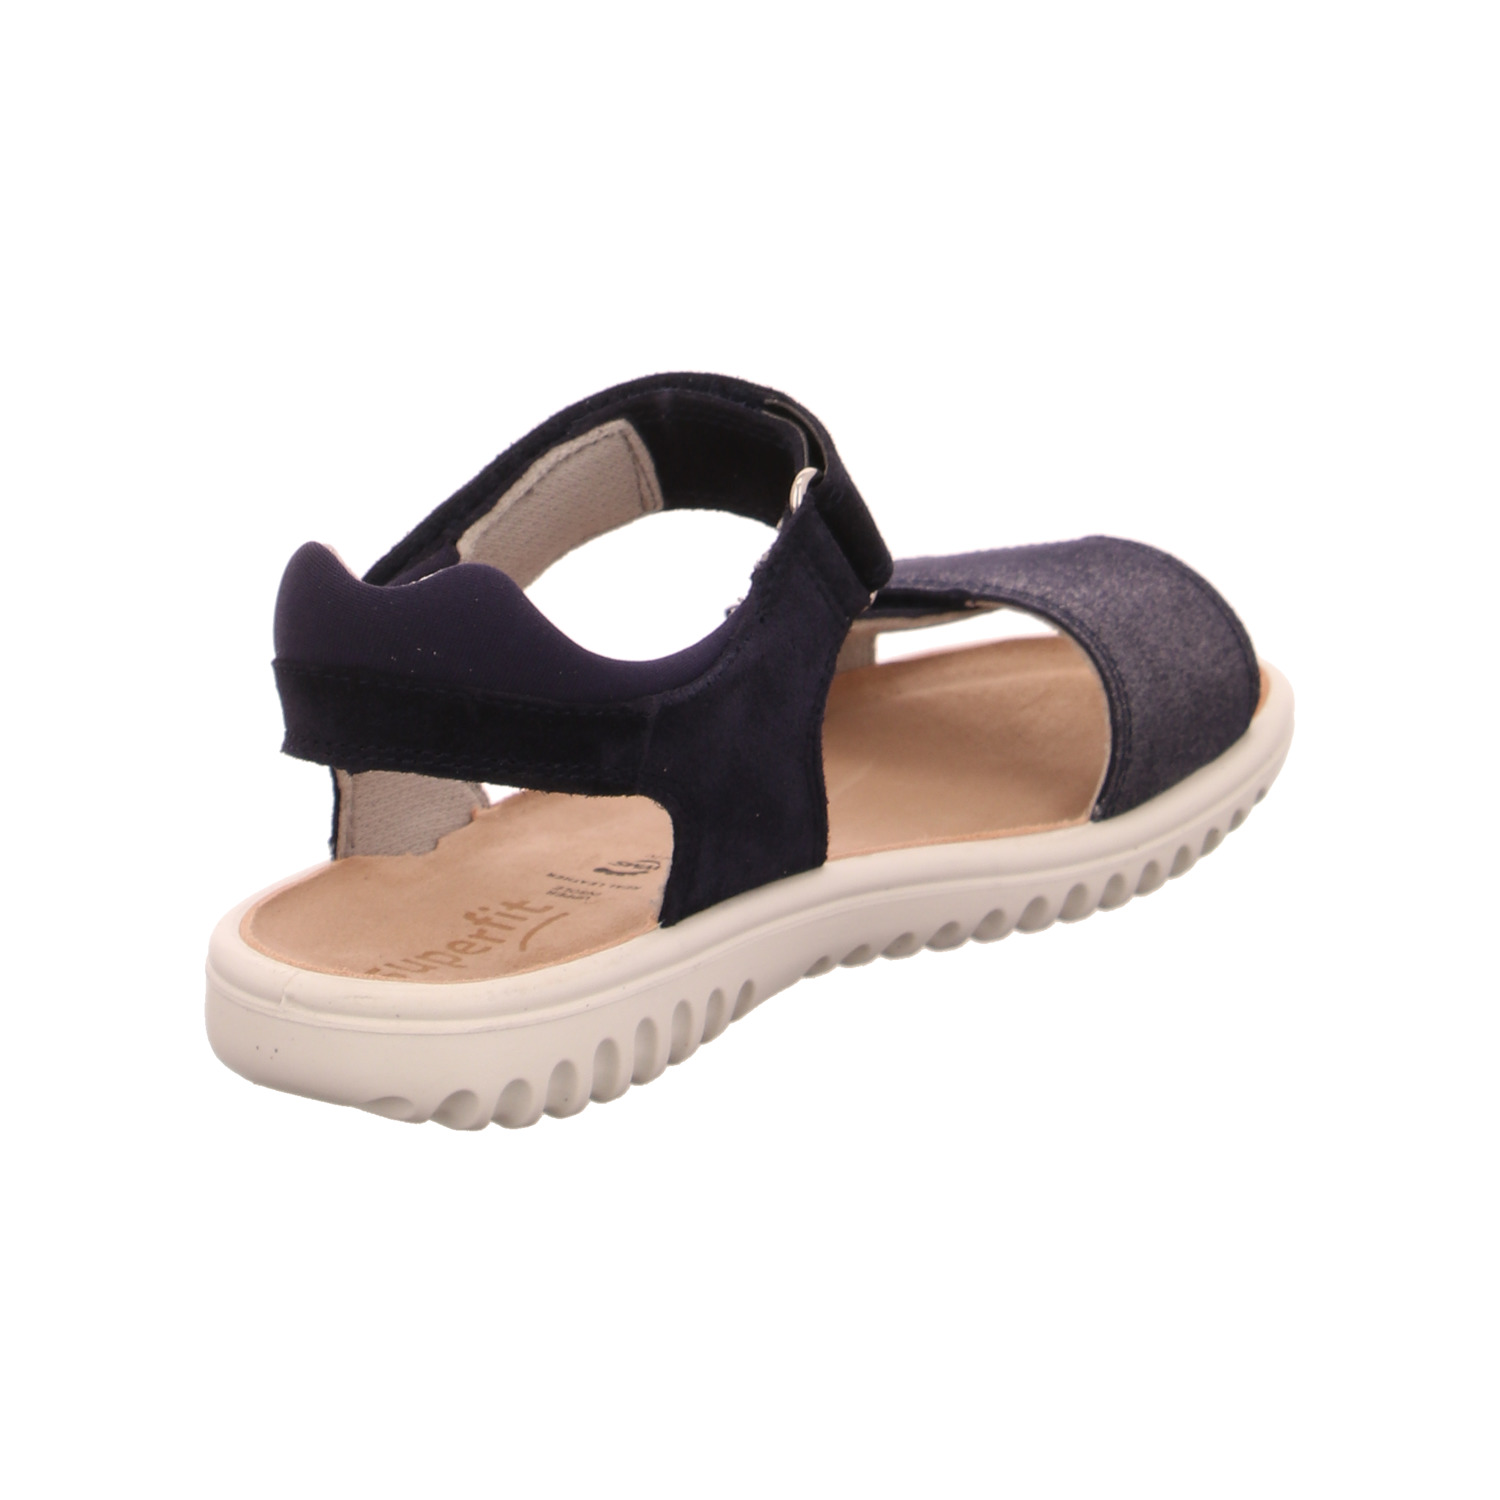 superfit-kinder-sandaletten-mädchen-blau-125041-29